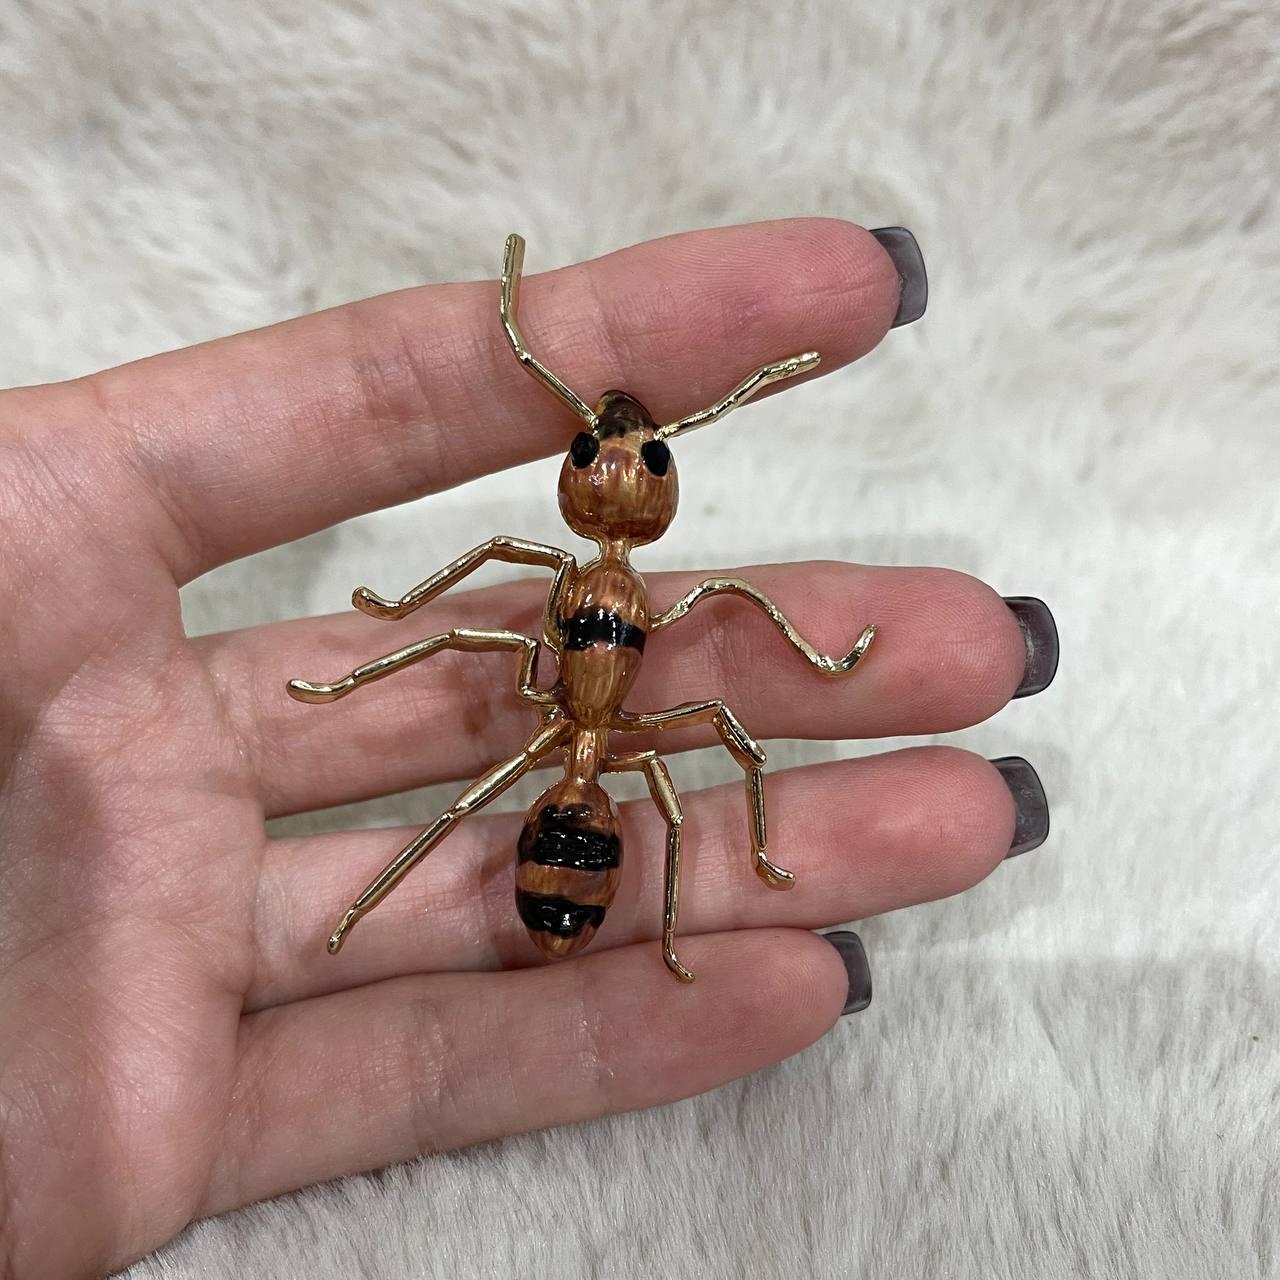 Стильна жіноча брошка "Працьовита мураха в золоті" - оригінальний подарунок дівчині